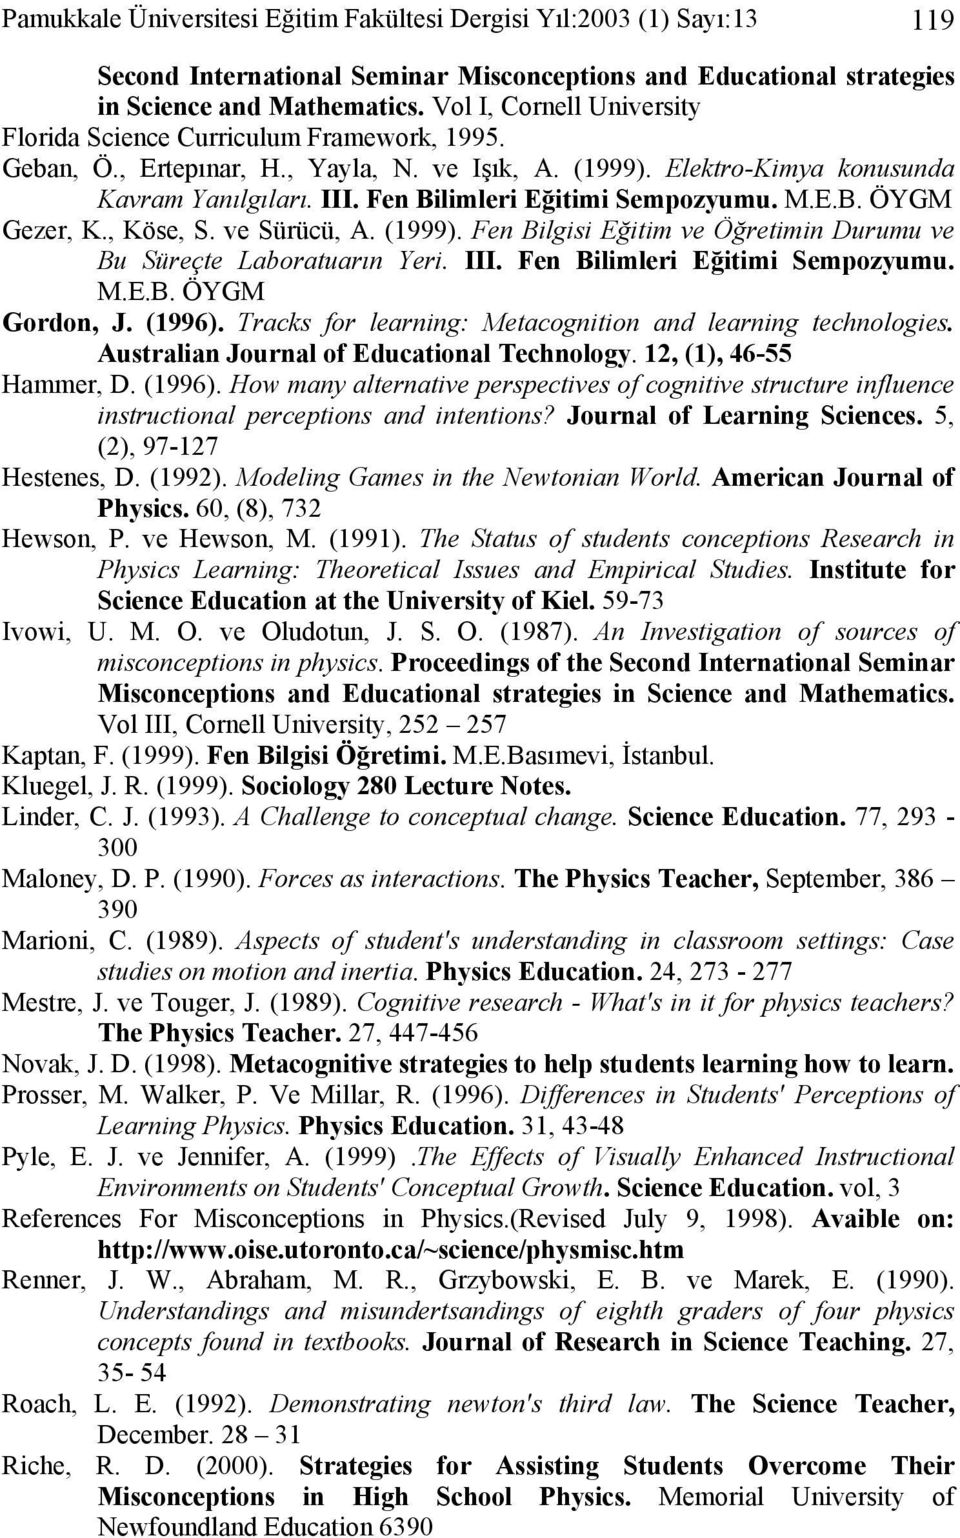 Fen Bilimleri Eğitimi Sempozyumu. M.E.B. ÖYGM Gezer, K., Köse, S. ve Sürücü, A. (1999). Fen Bilgisi Eğitim ve Öğretimin Durumu ve Bu Süreçte Laboratuarın Yeri. III. Fen Bilimleri Eğitimi Sempozyumu.